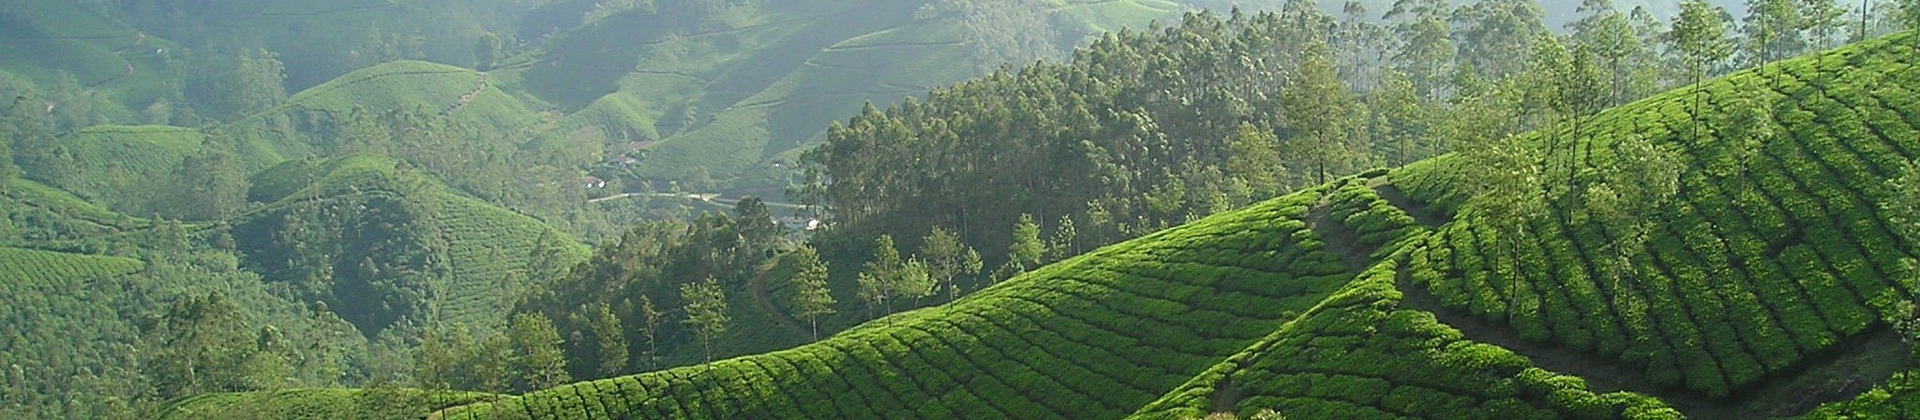 Ceylon (Sri Lanka) Tea